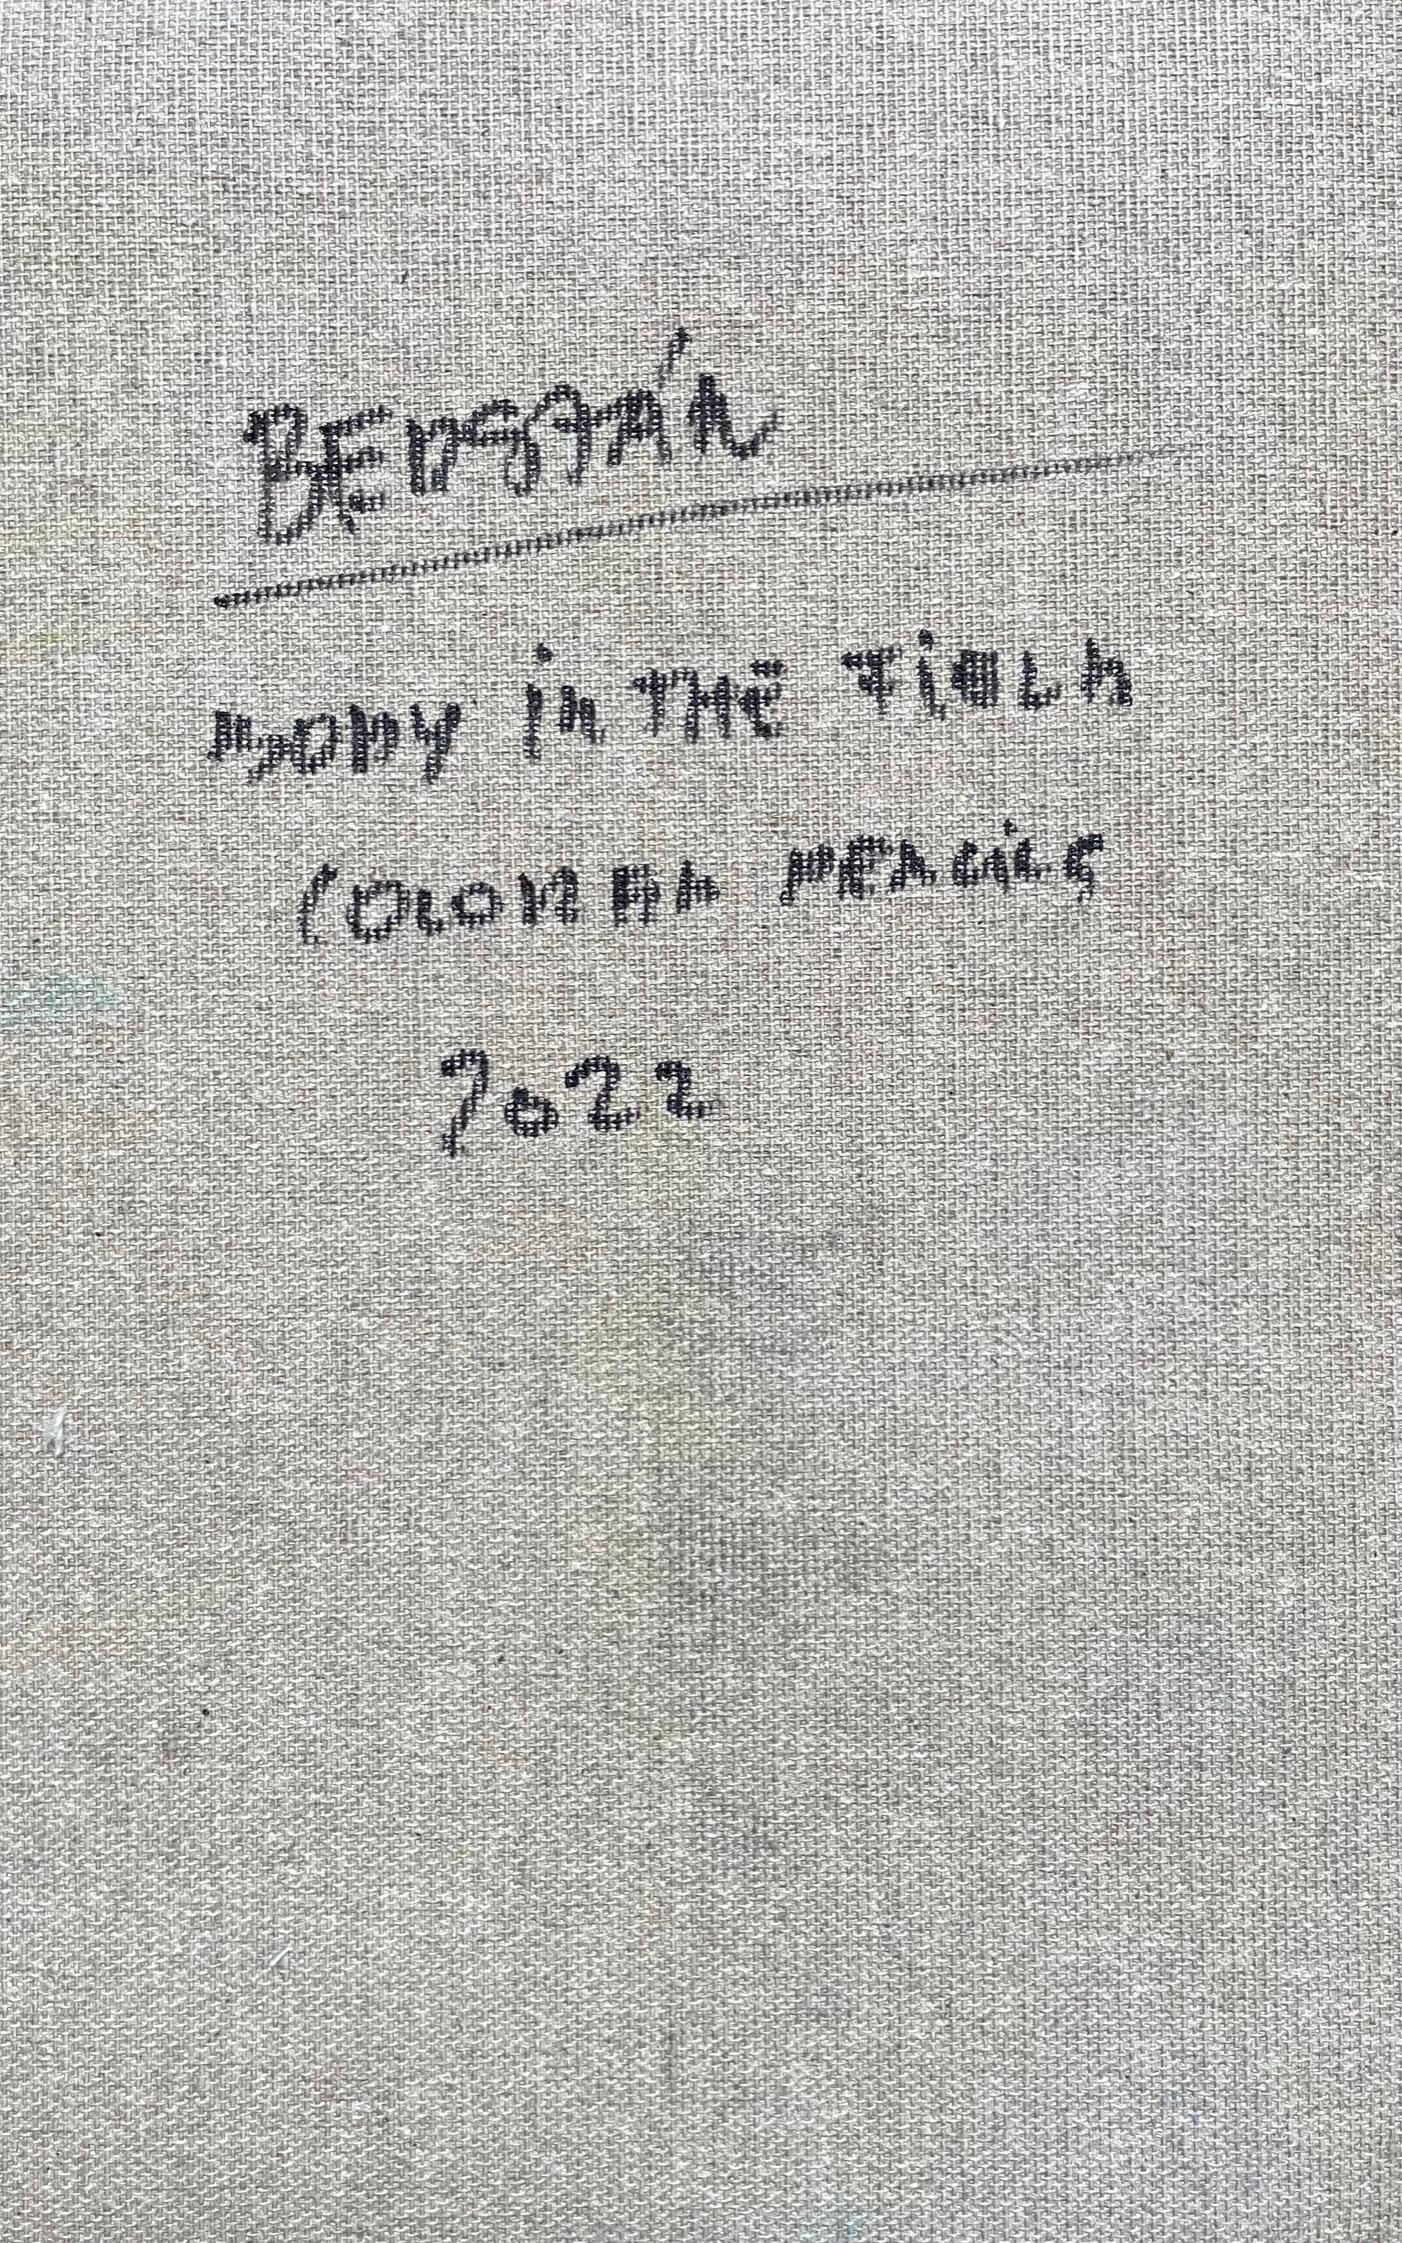 Leiche auf dem Feld #11, 2022
Buntstifte auf Leinwand

25 H x 16 B cm

Signiert auf der Rückseite

Zsolt Berszán verkörpert in seinen Werken die Auflösung des menschlichen Körpers durch das Prisma des Fragments, des zerteilten Körpers und des